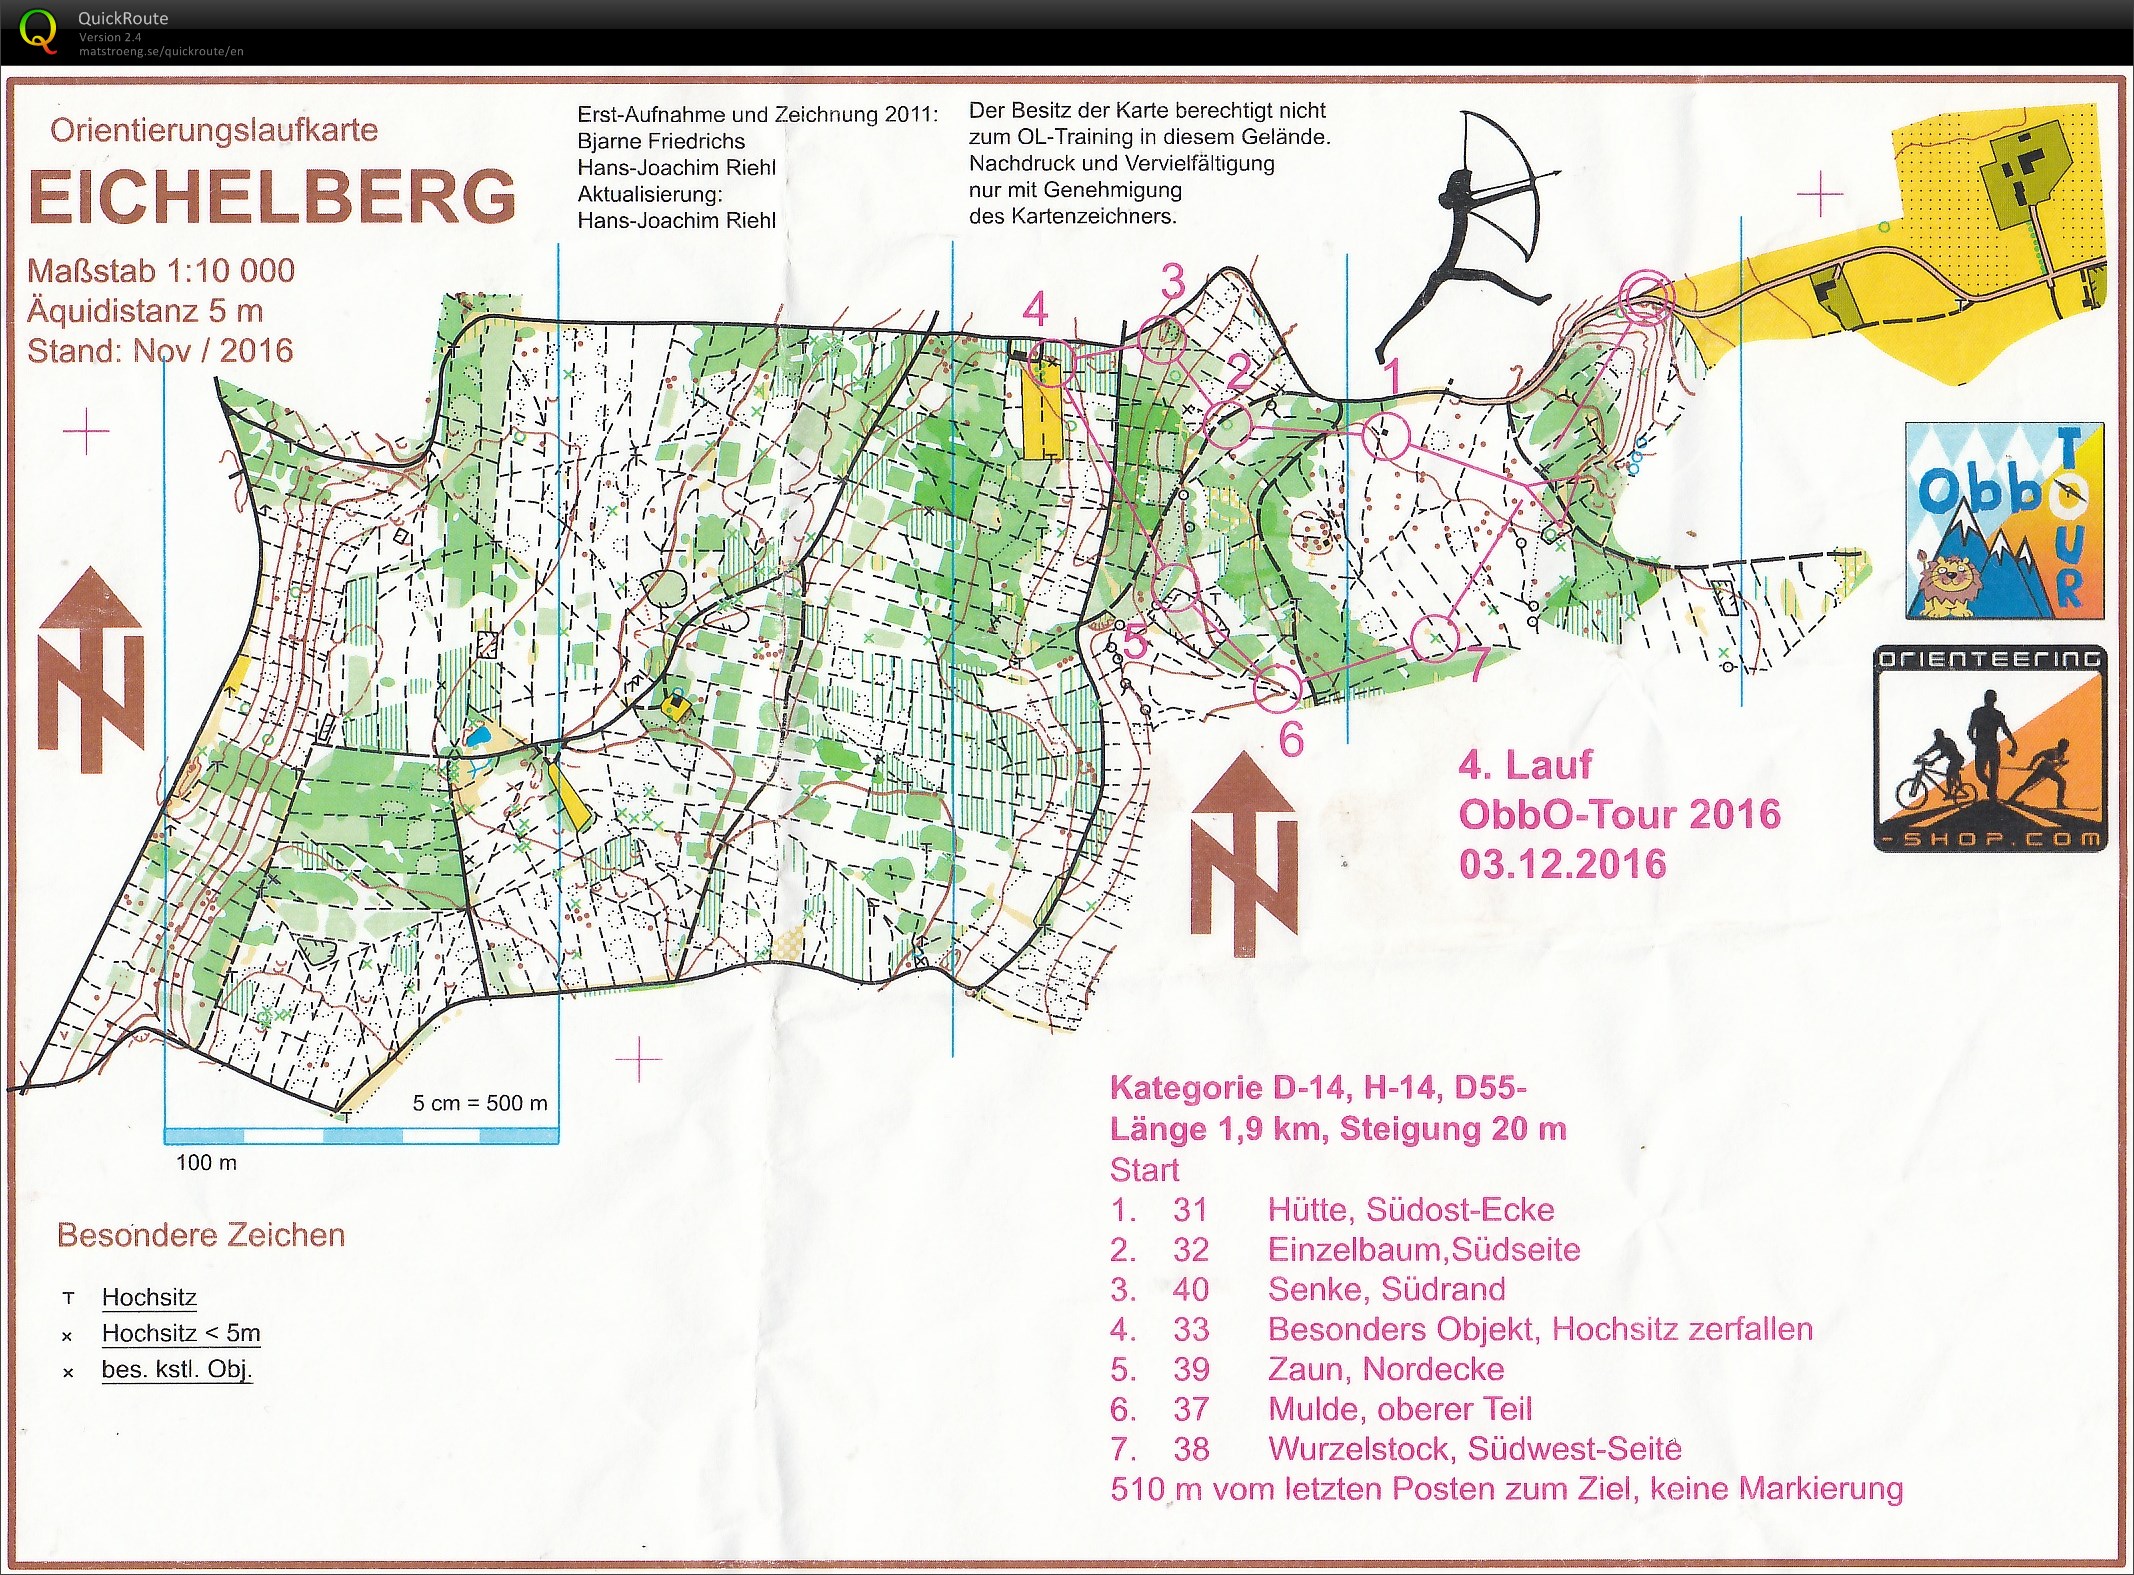 ObbO-Tour 2016 Lauf 4 (2016-12-03)